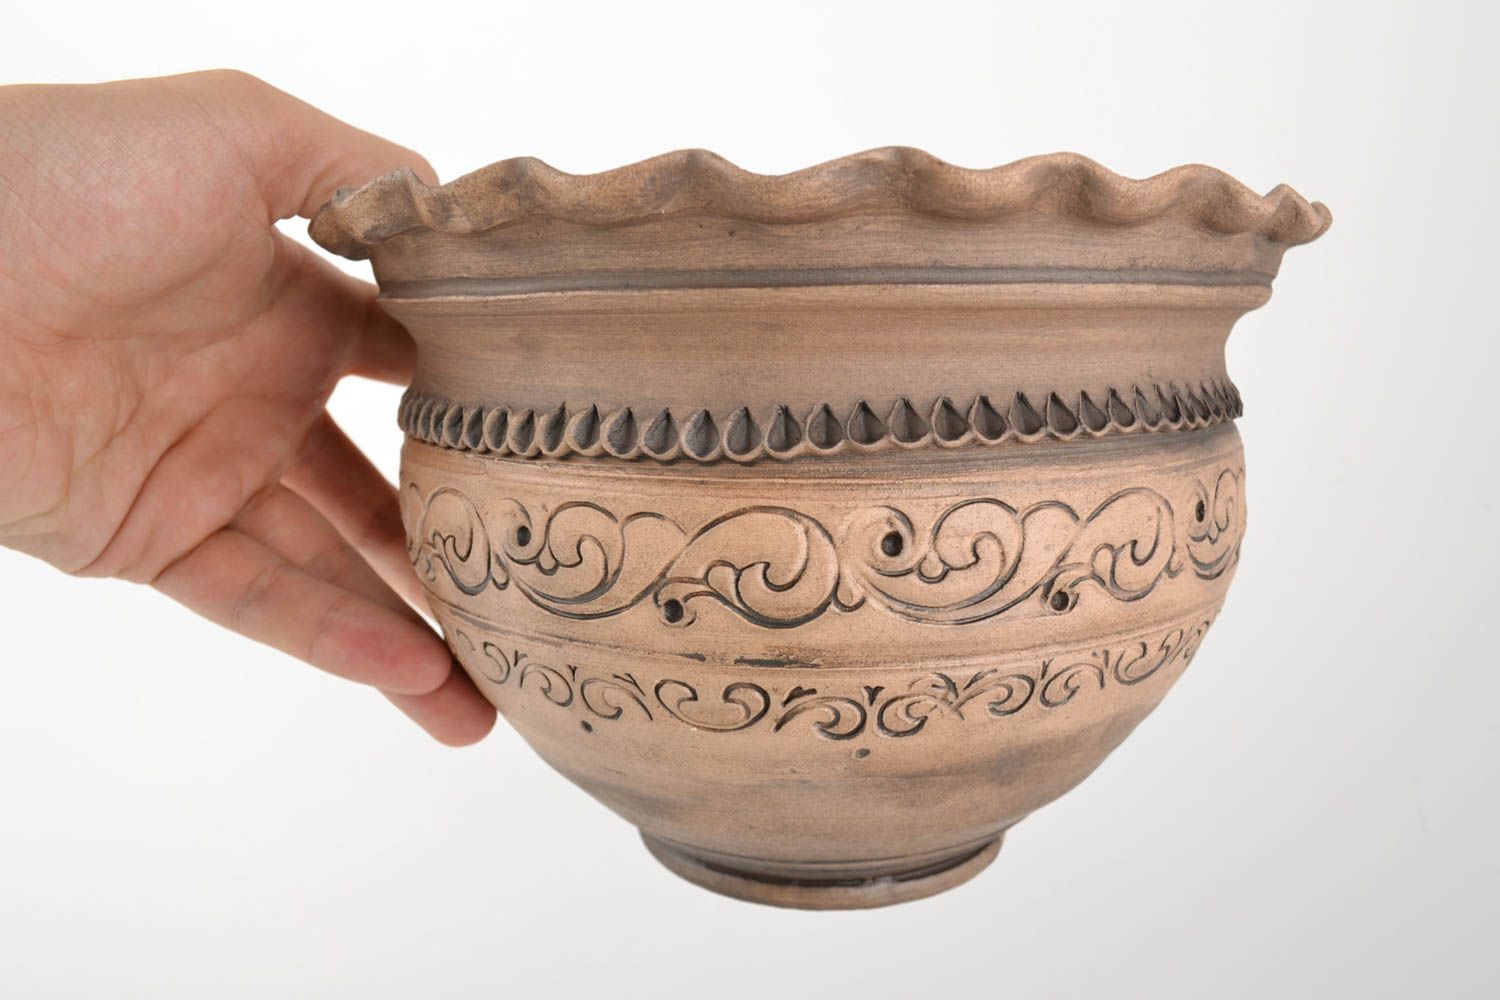 60 oz ceramic decorative kitchen pot décor 2,2 lb photo 5